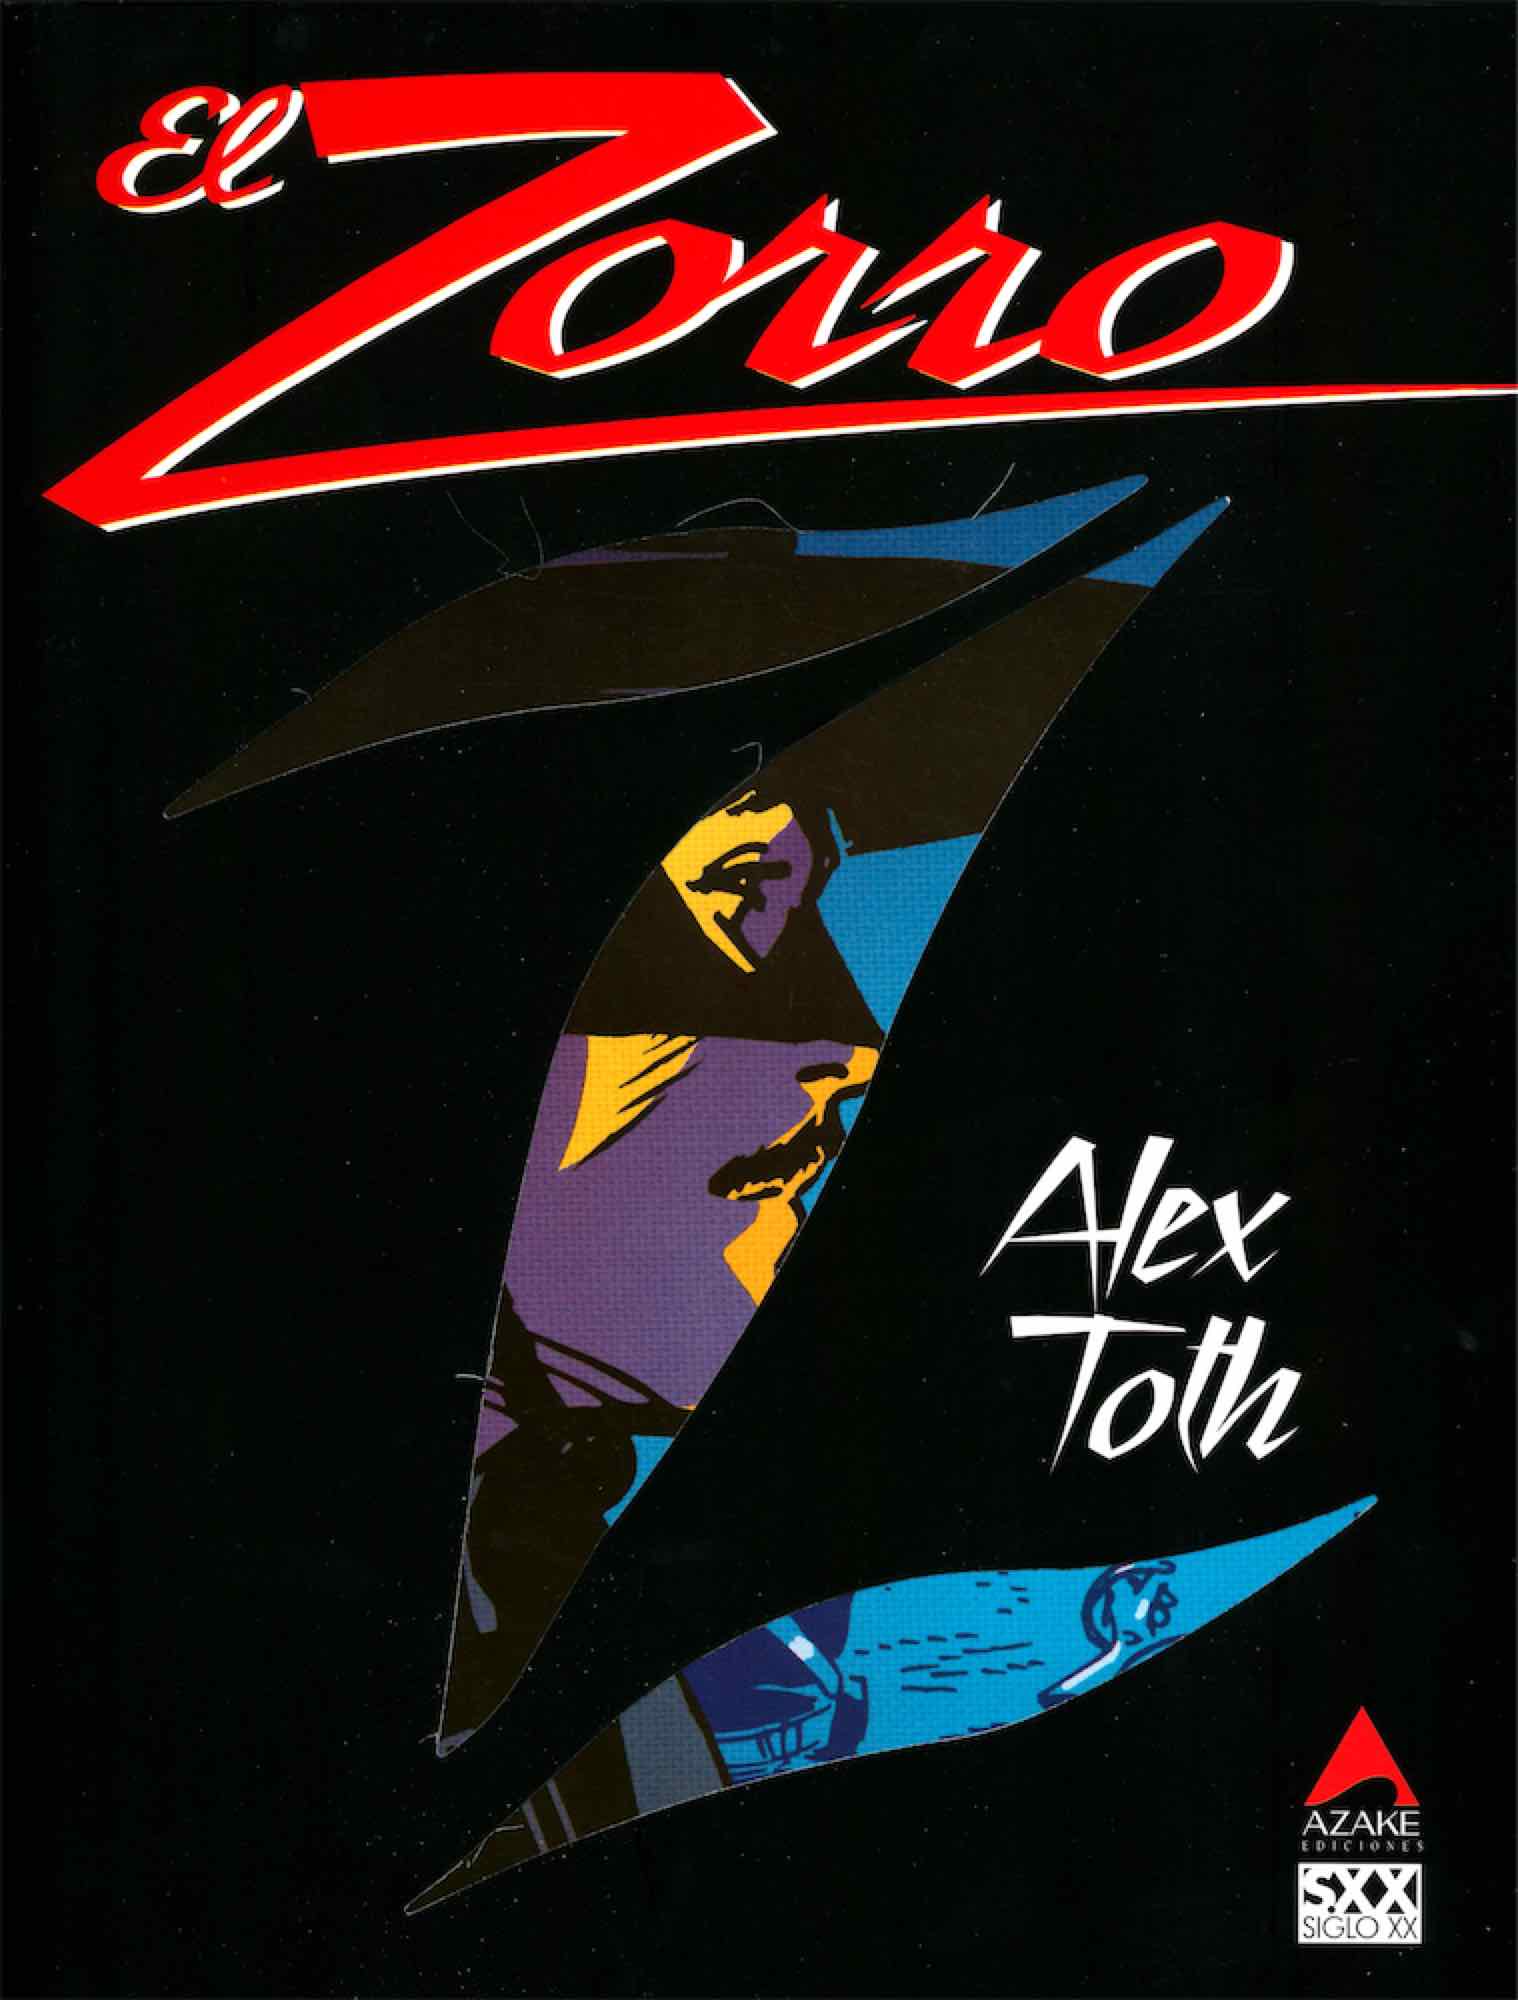 EL ZORRO (ALEX TOTH )